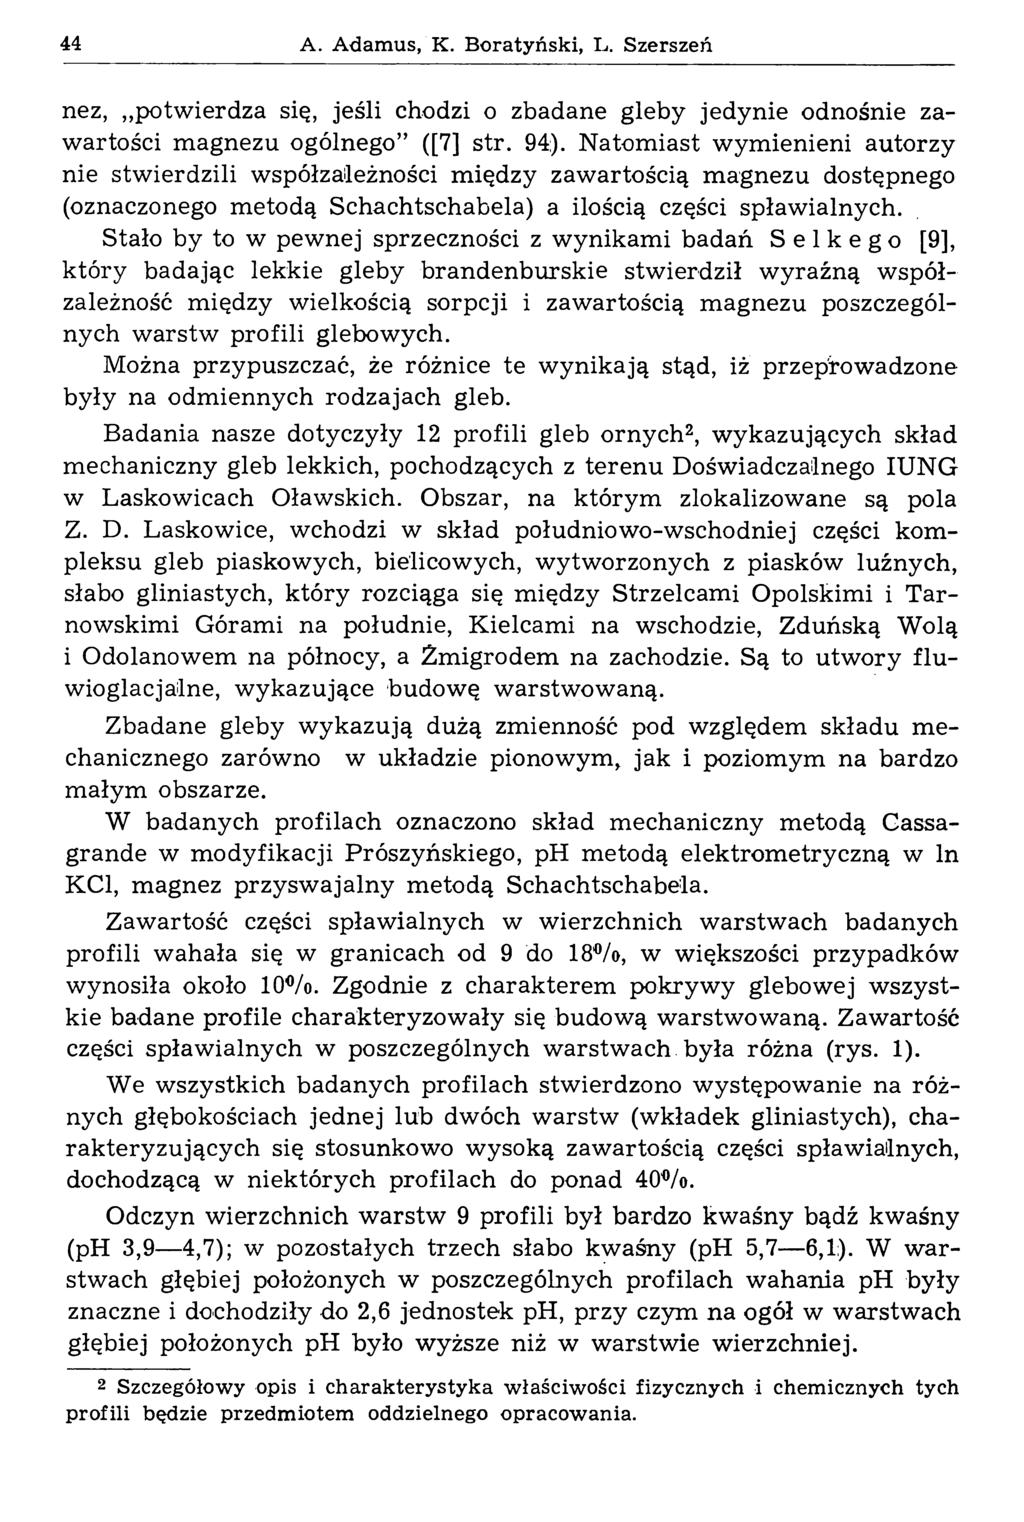 44 A. Adamus, K. Boratyński, L. Szerszeń nez, potw ierdza się, jeśli chodzi o zbadane gleby jedynie odnośnie zawartości m agnezu ogólnego ([7] str. 94).